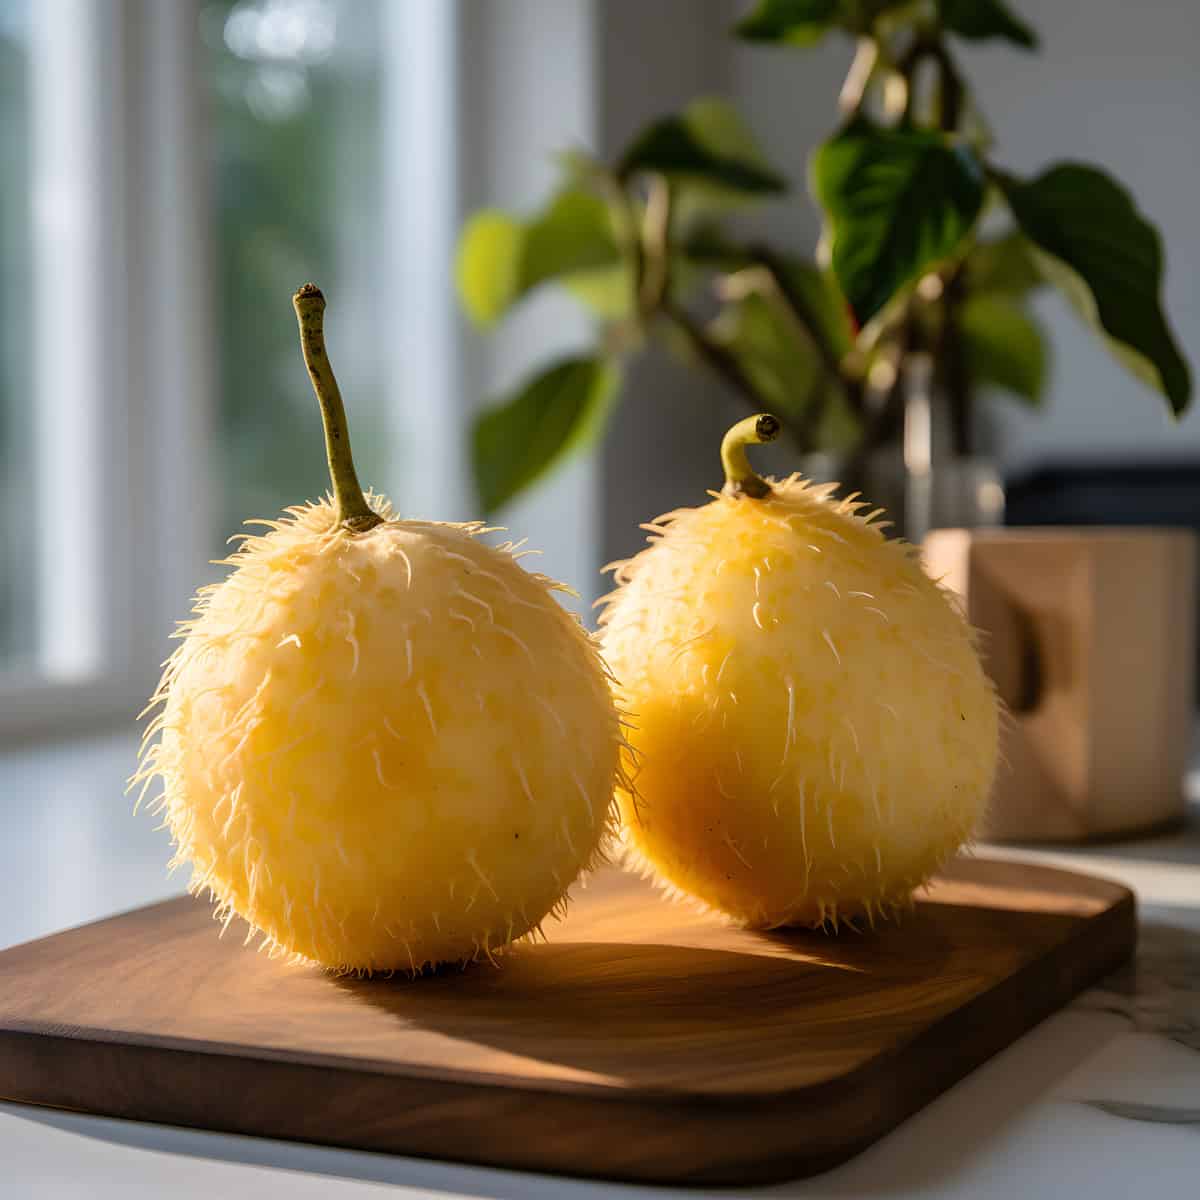 Poro Poro Fruit on a kitchen counter